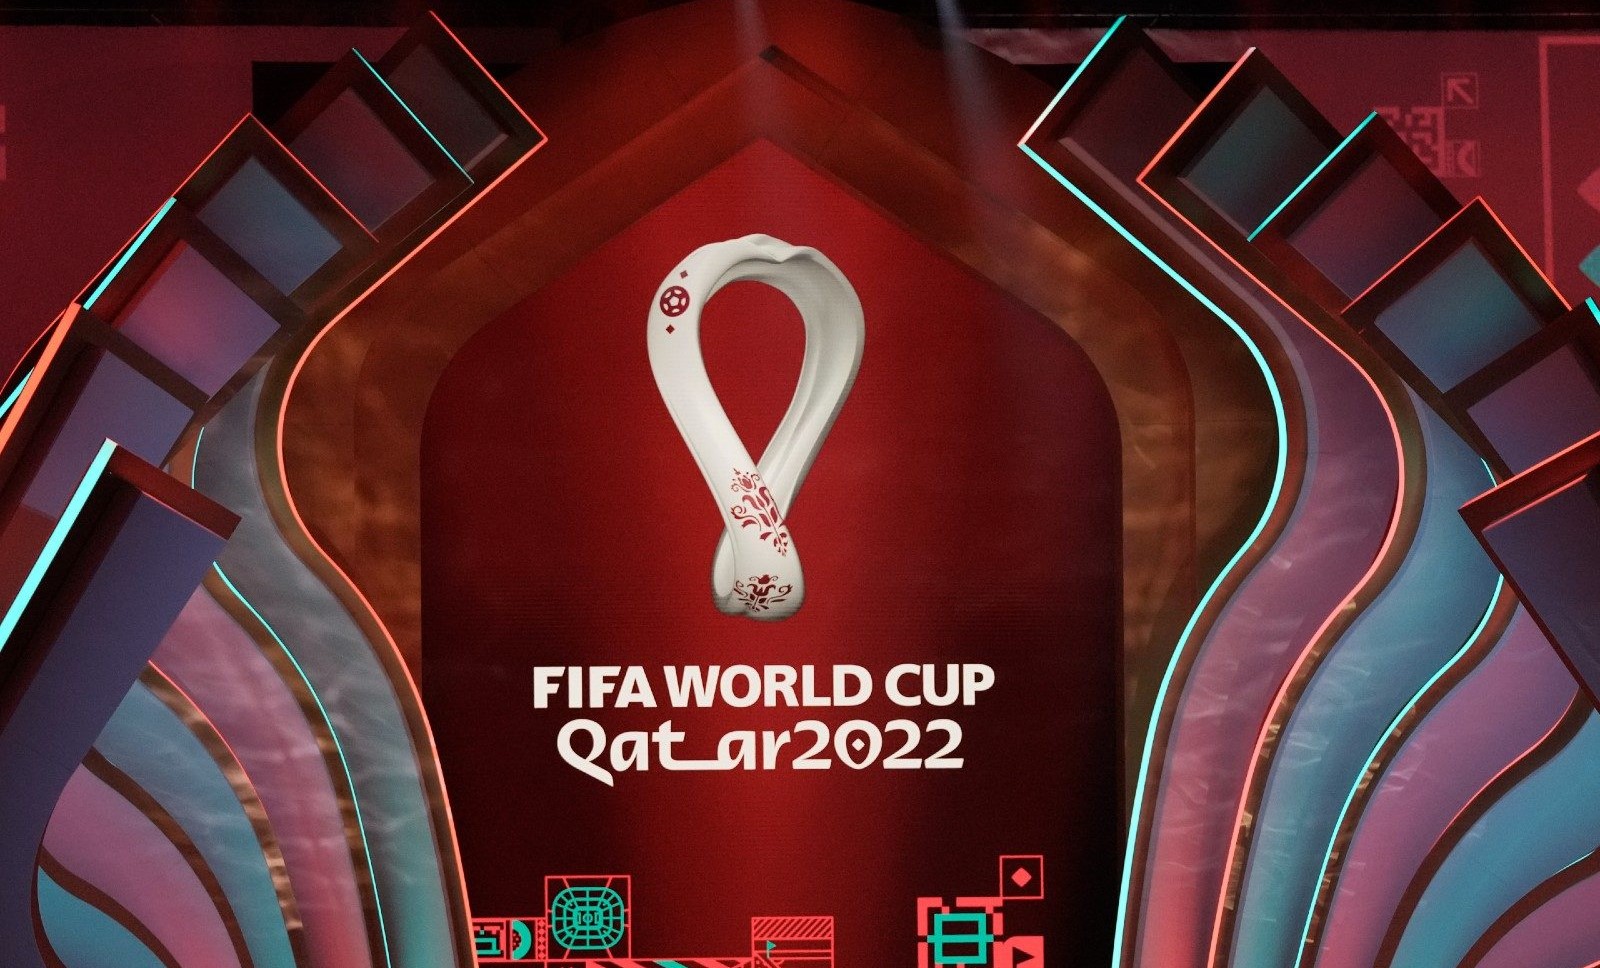 Giá mua bản quyền World Cup 2022 tại các quốc gia trên thế giới?